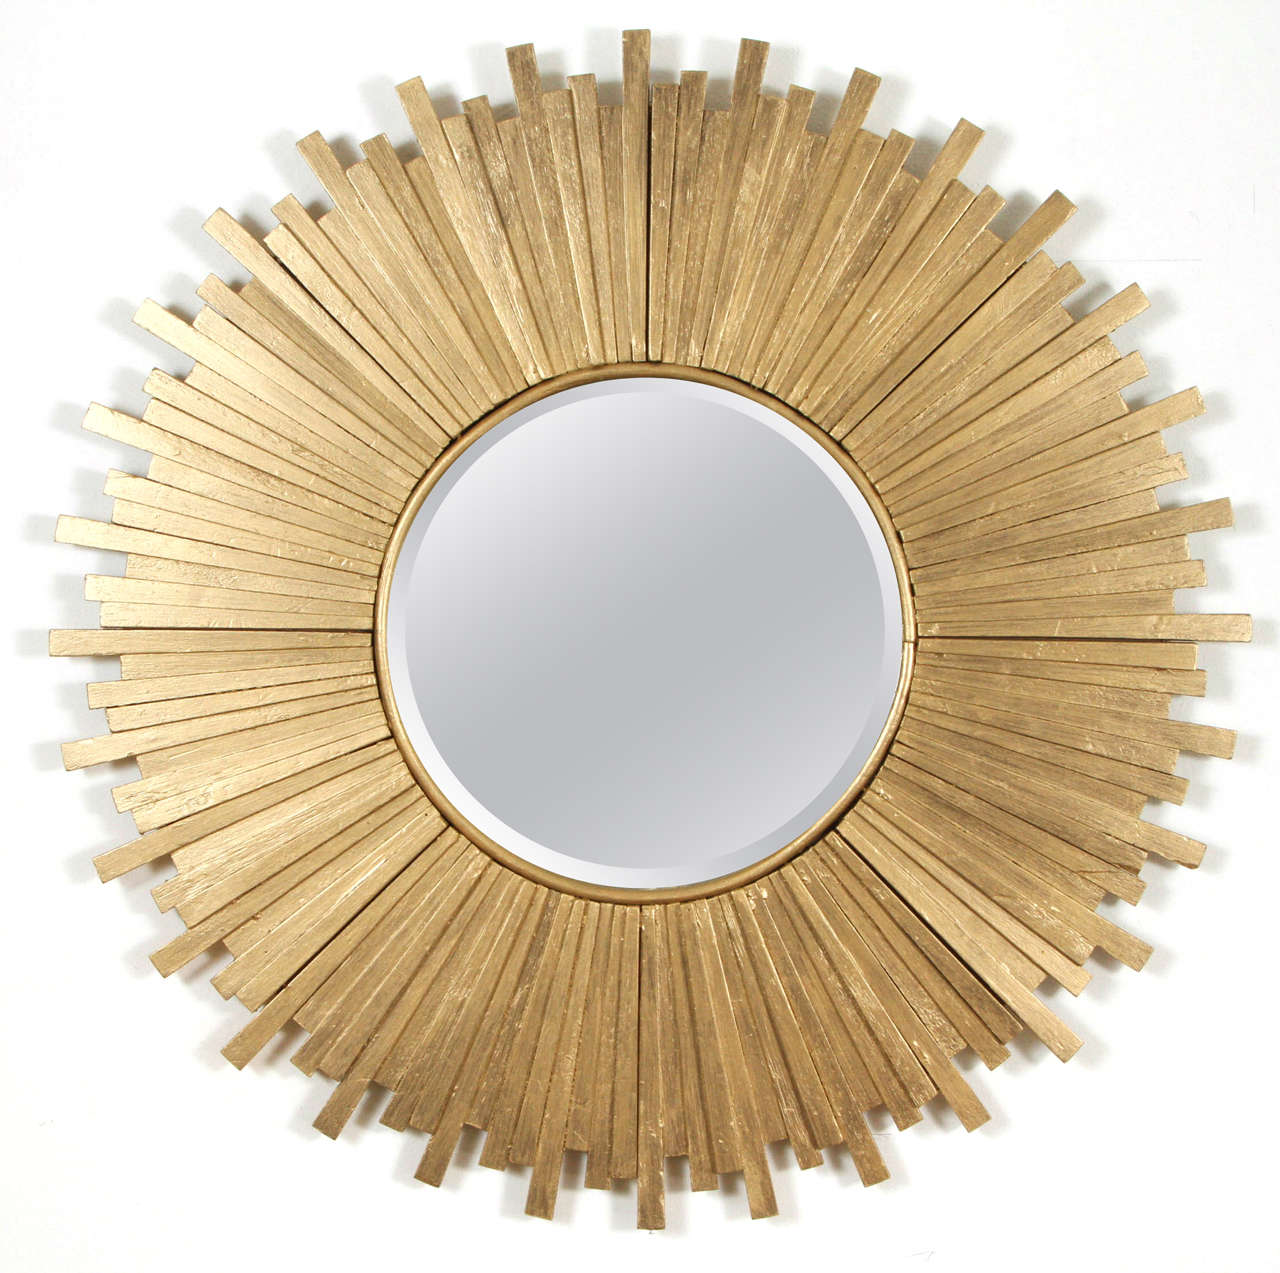 Wood gold starburst mirror.